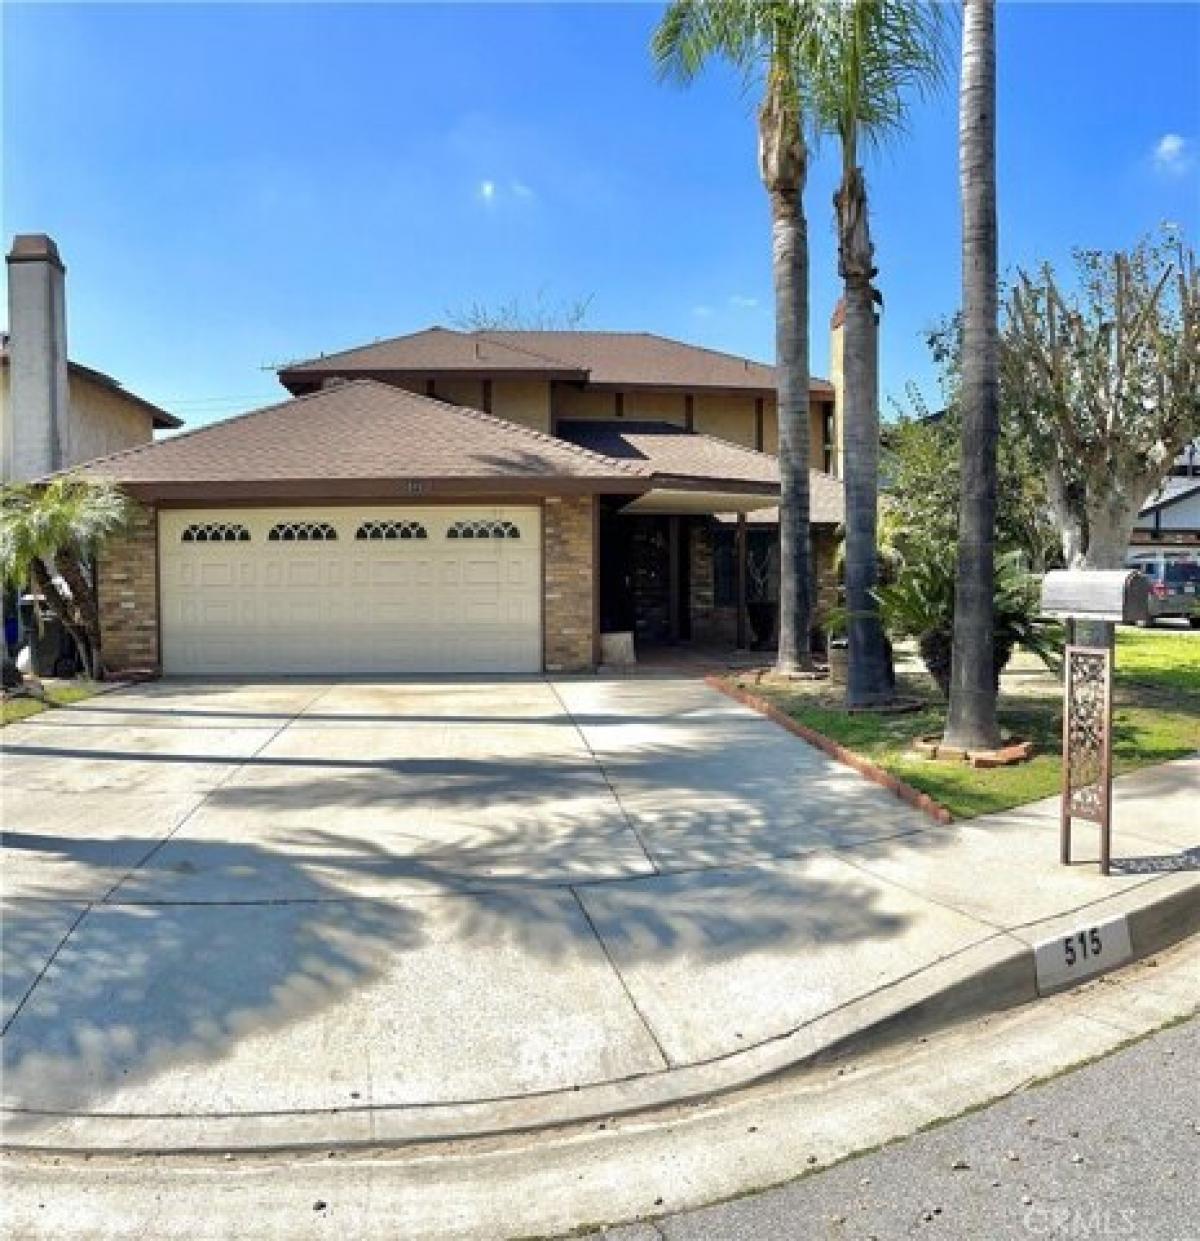 Picture of Home For Sale in Montebello, California, United States